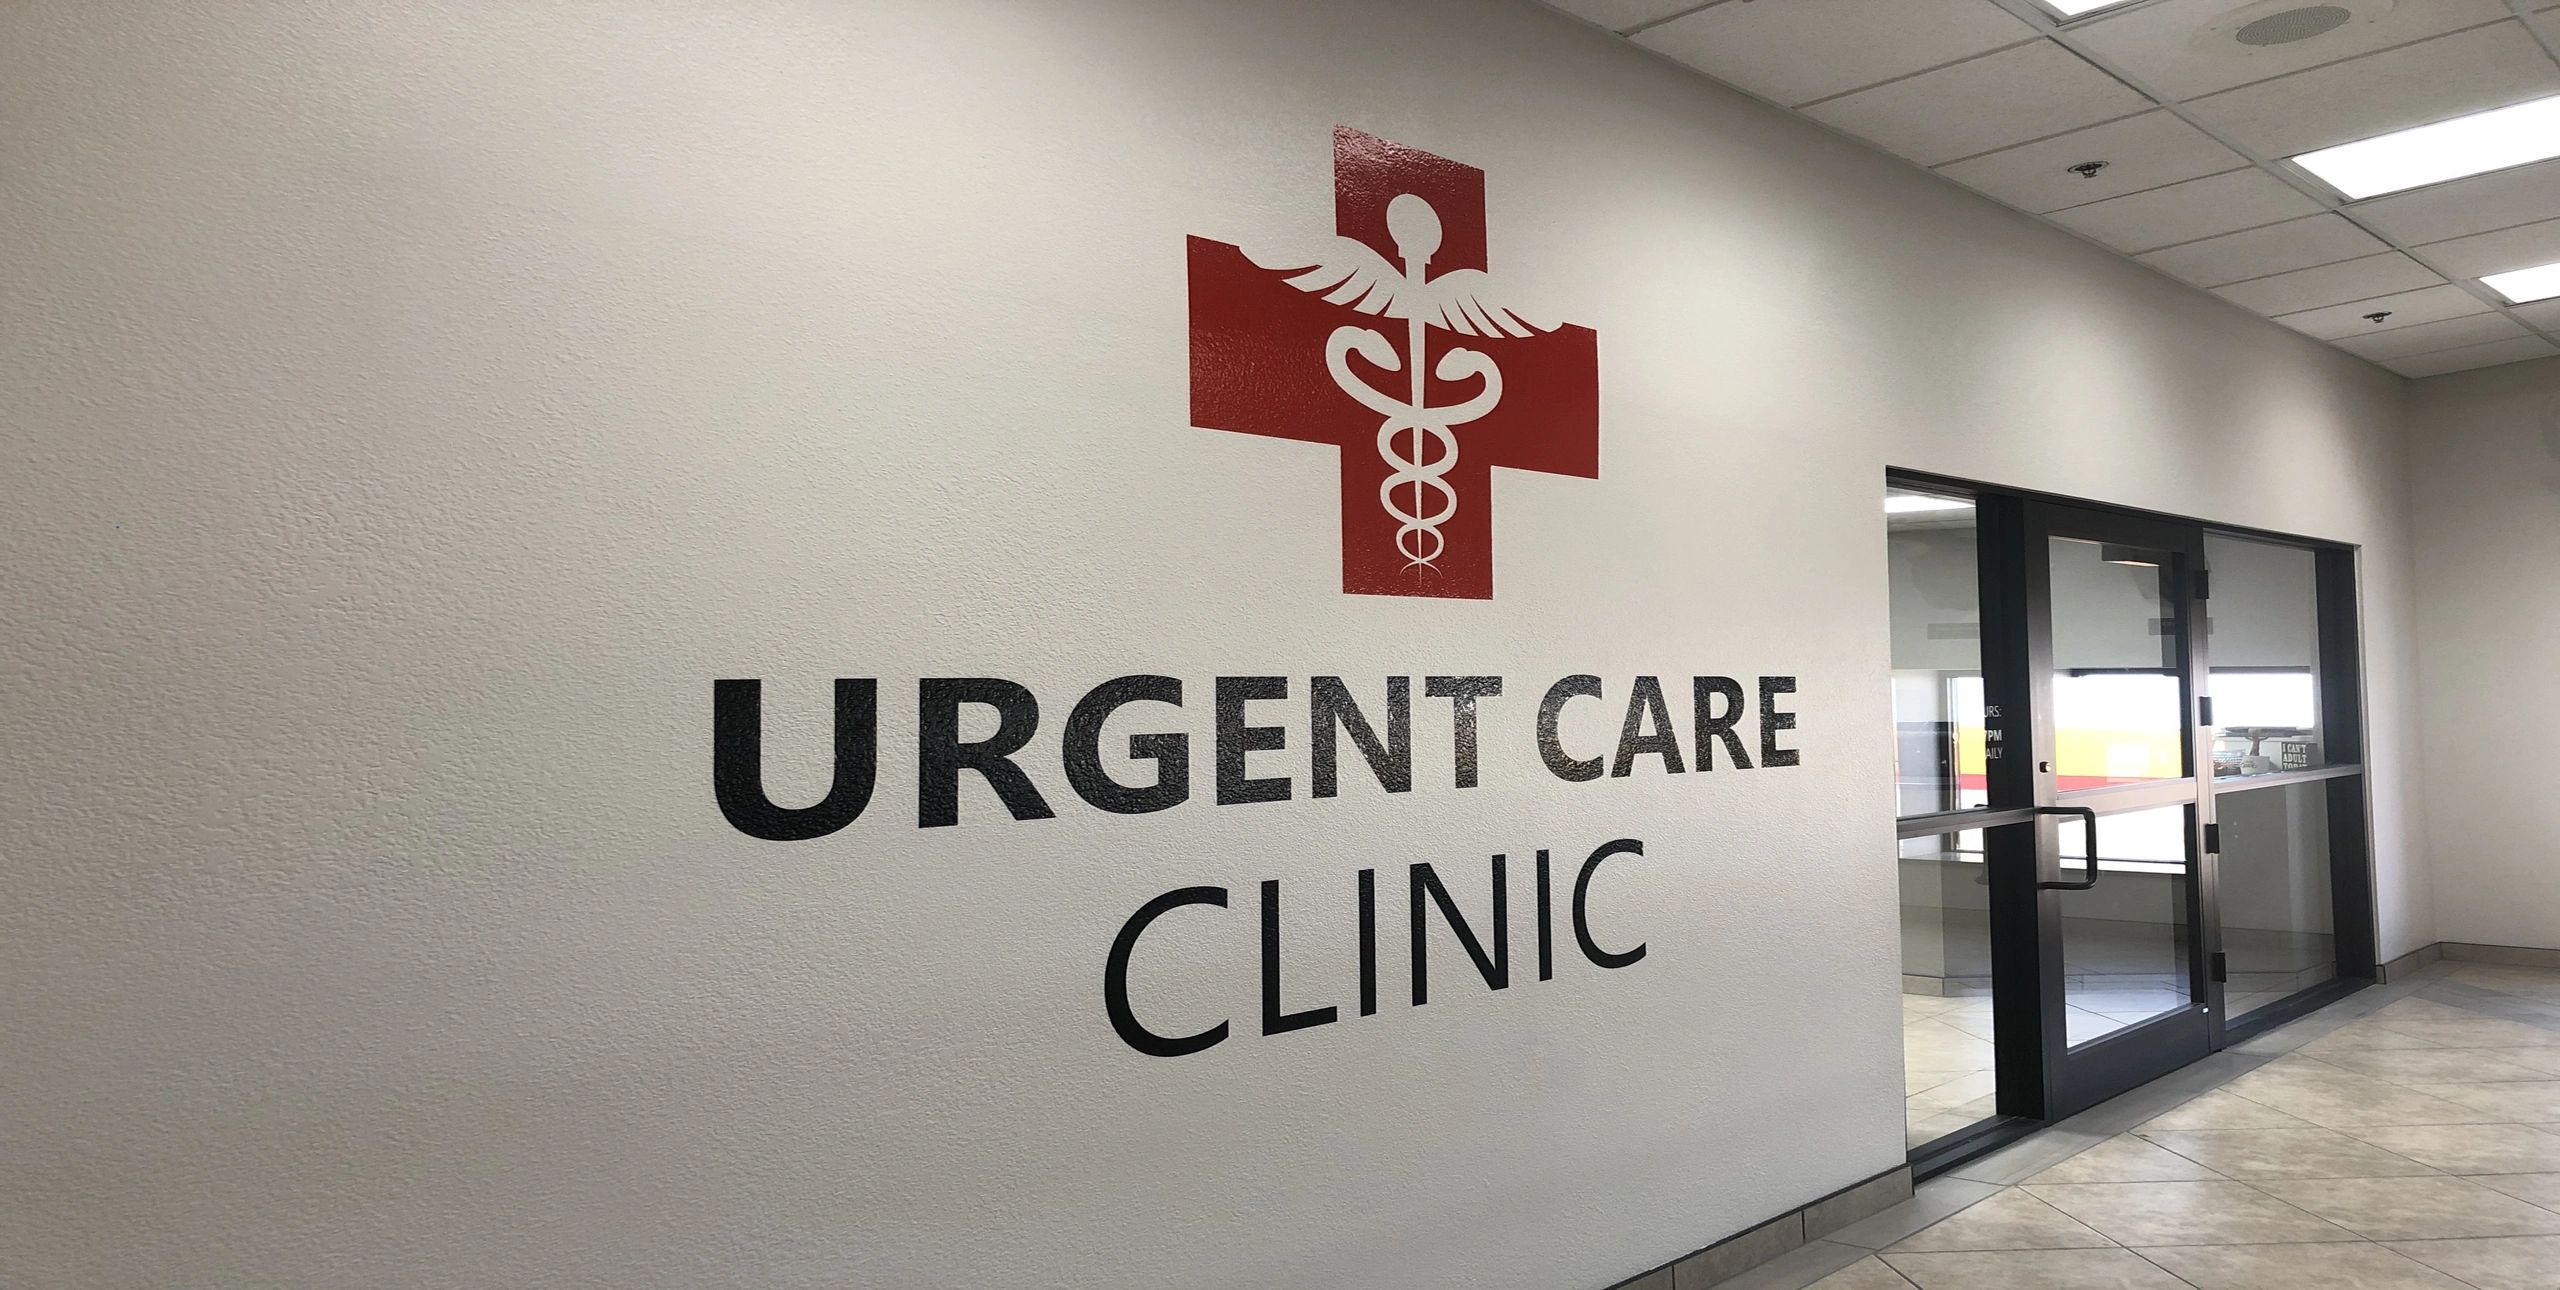 Mittensurgentcare - Urgent Care, Health Clinic, Walk in Clinics